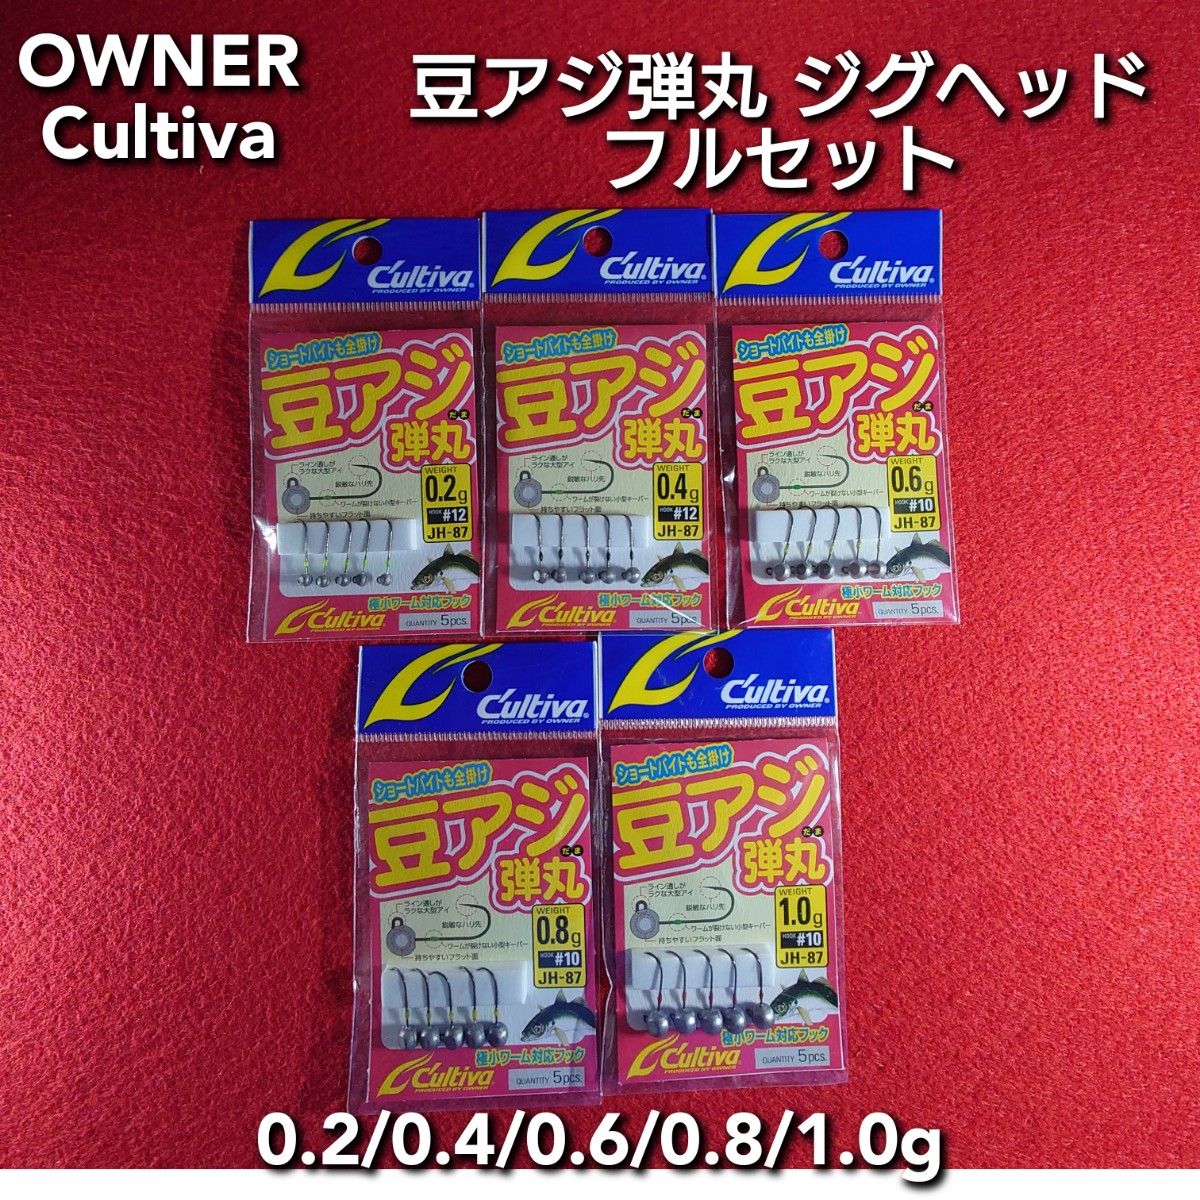 【新品未使用】OWNER Cultiva 豆アジ弾丸 ジグヘッド フルセット